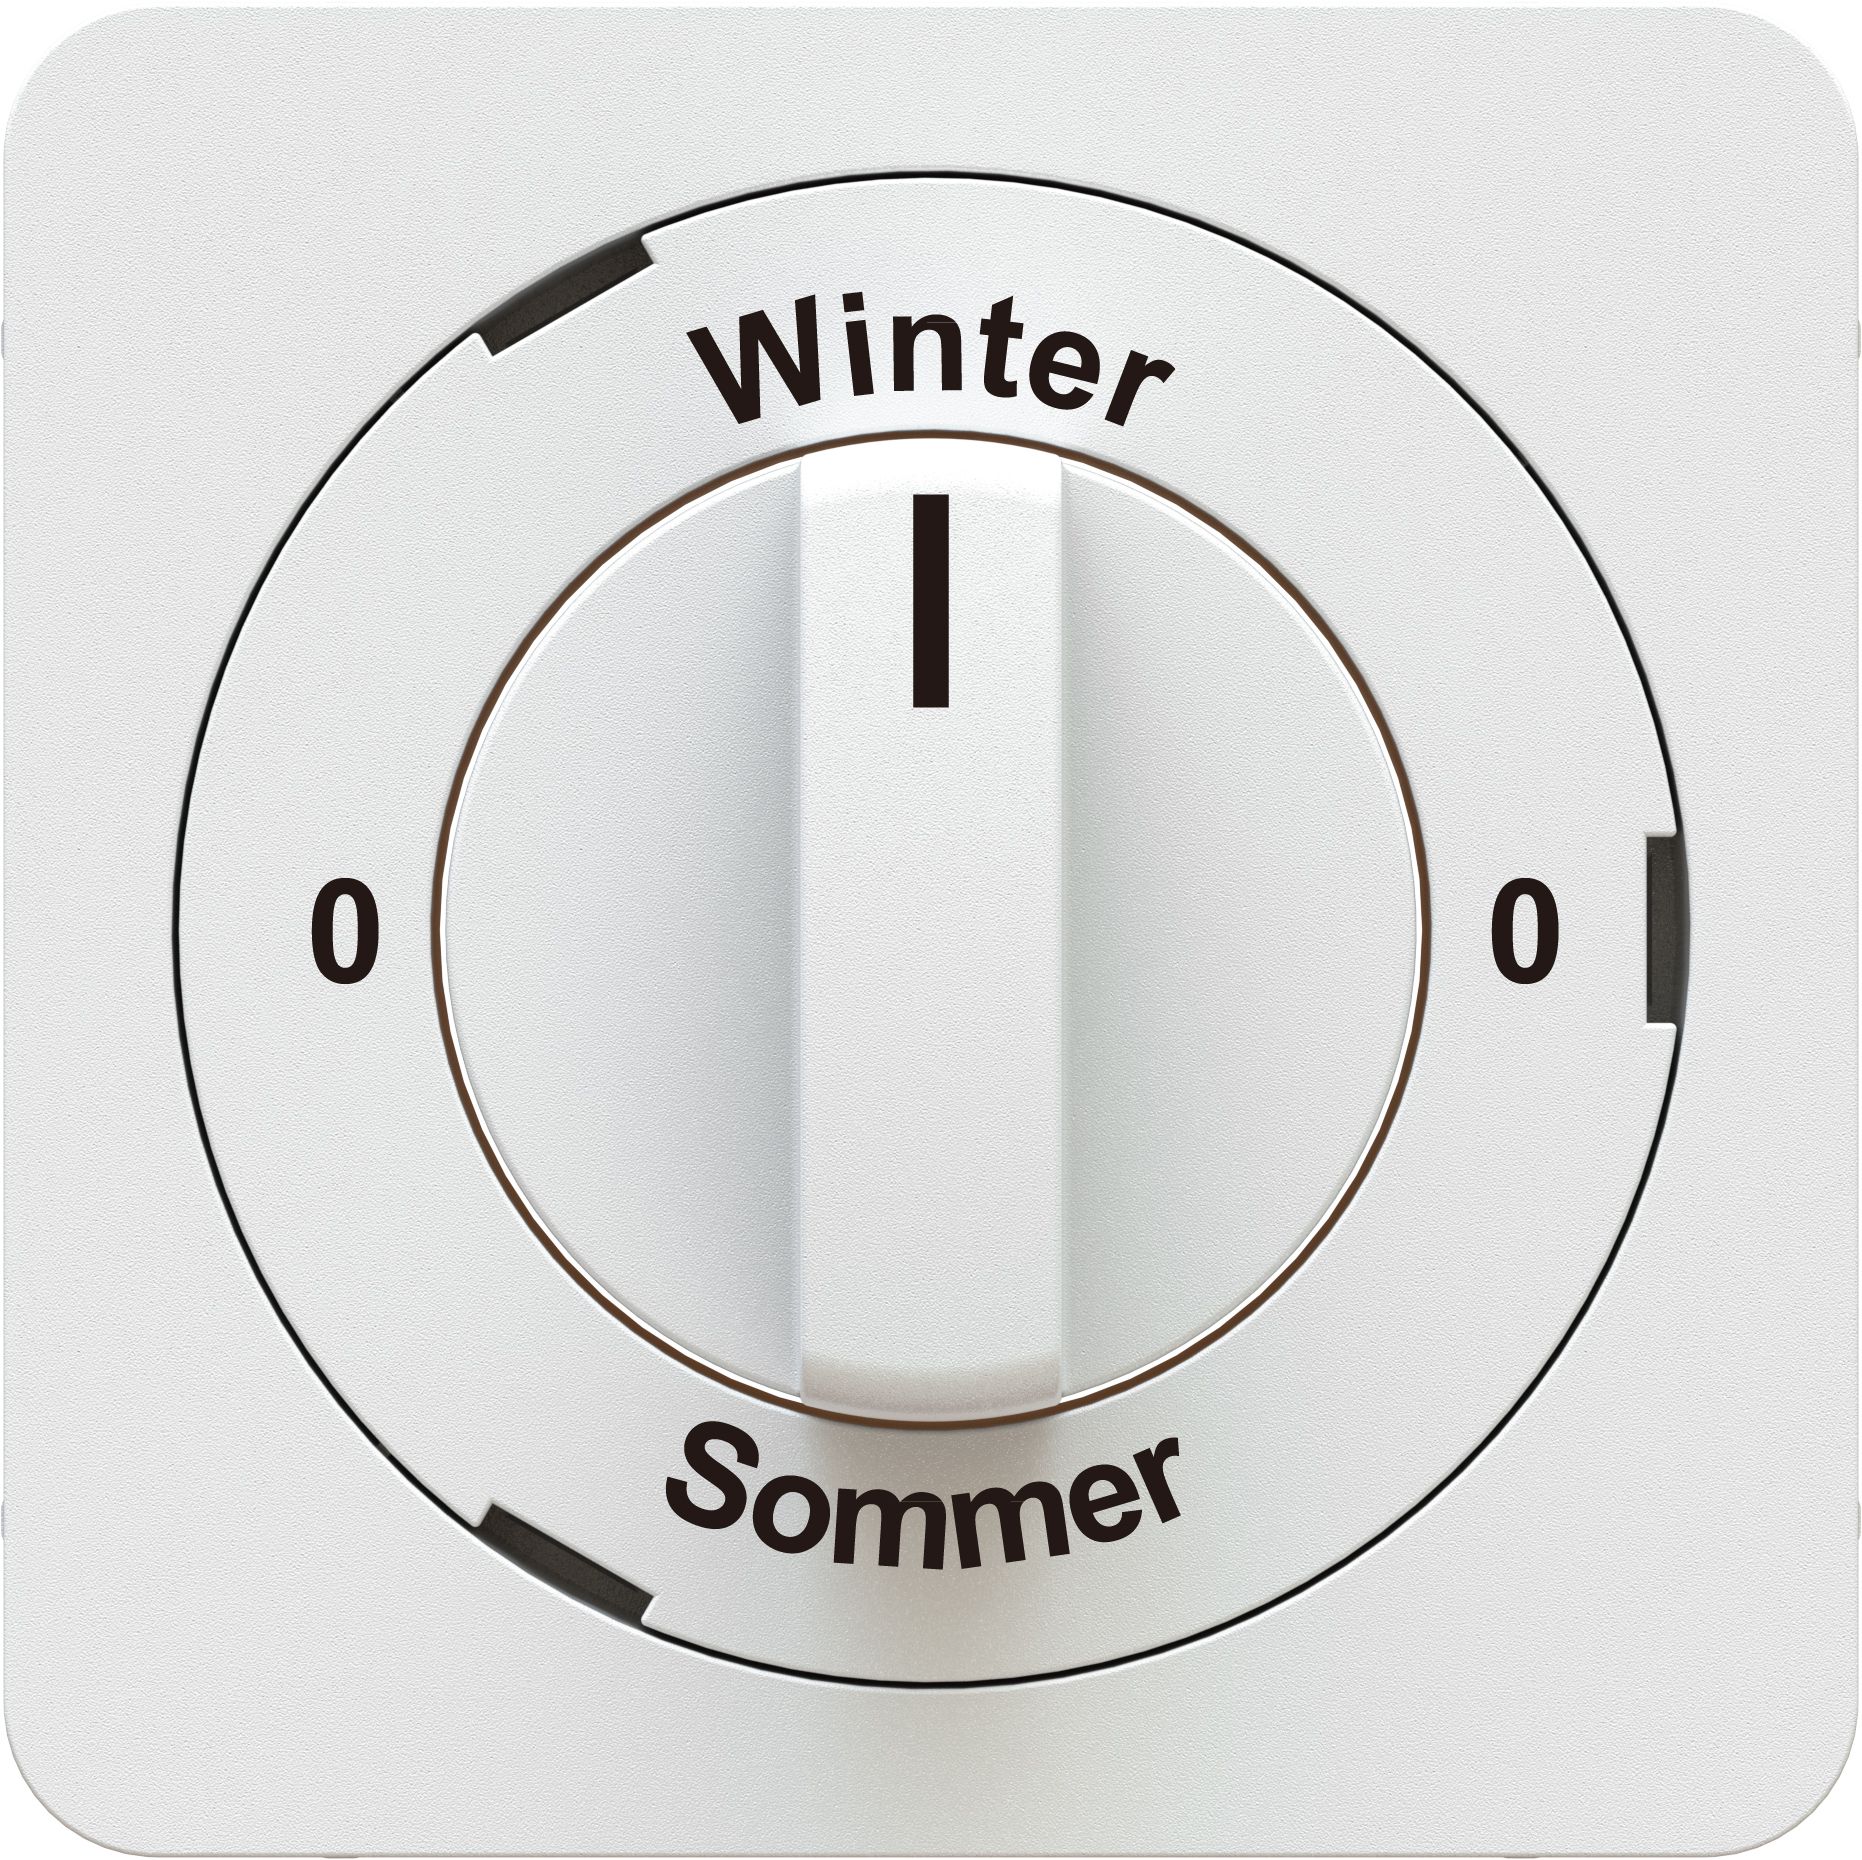 interrupteur rotatif/à clé 0-Winter-0-Sommer pl.fr. priamos blanc